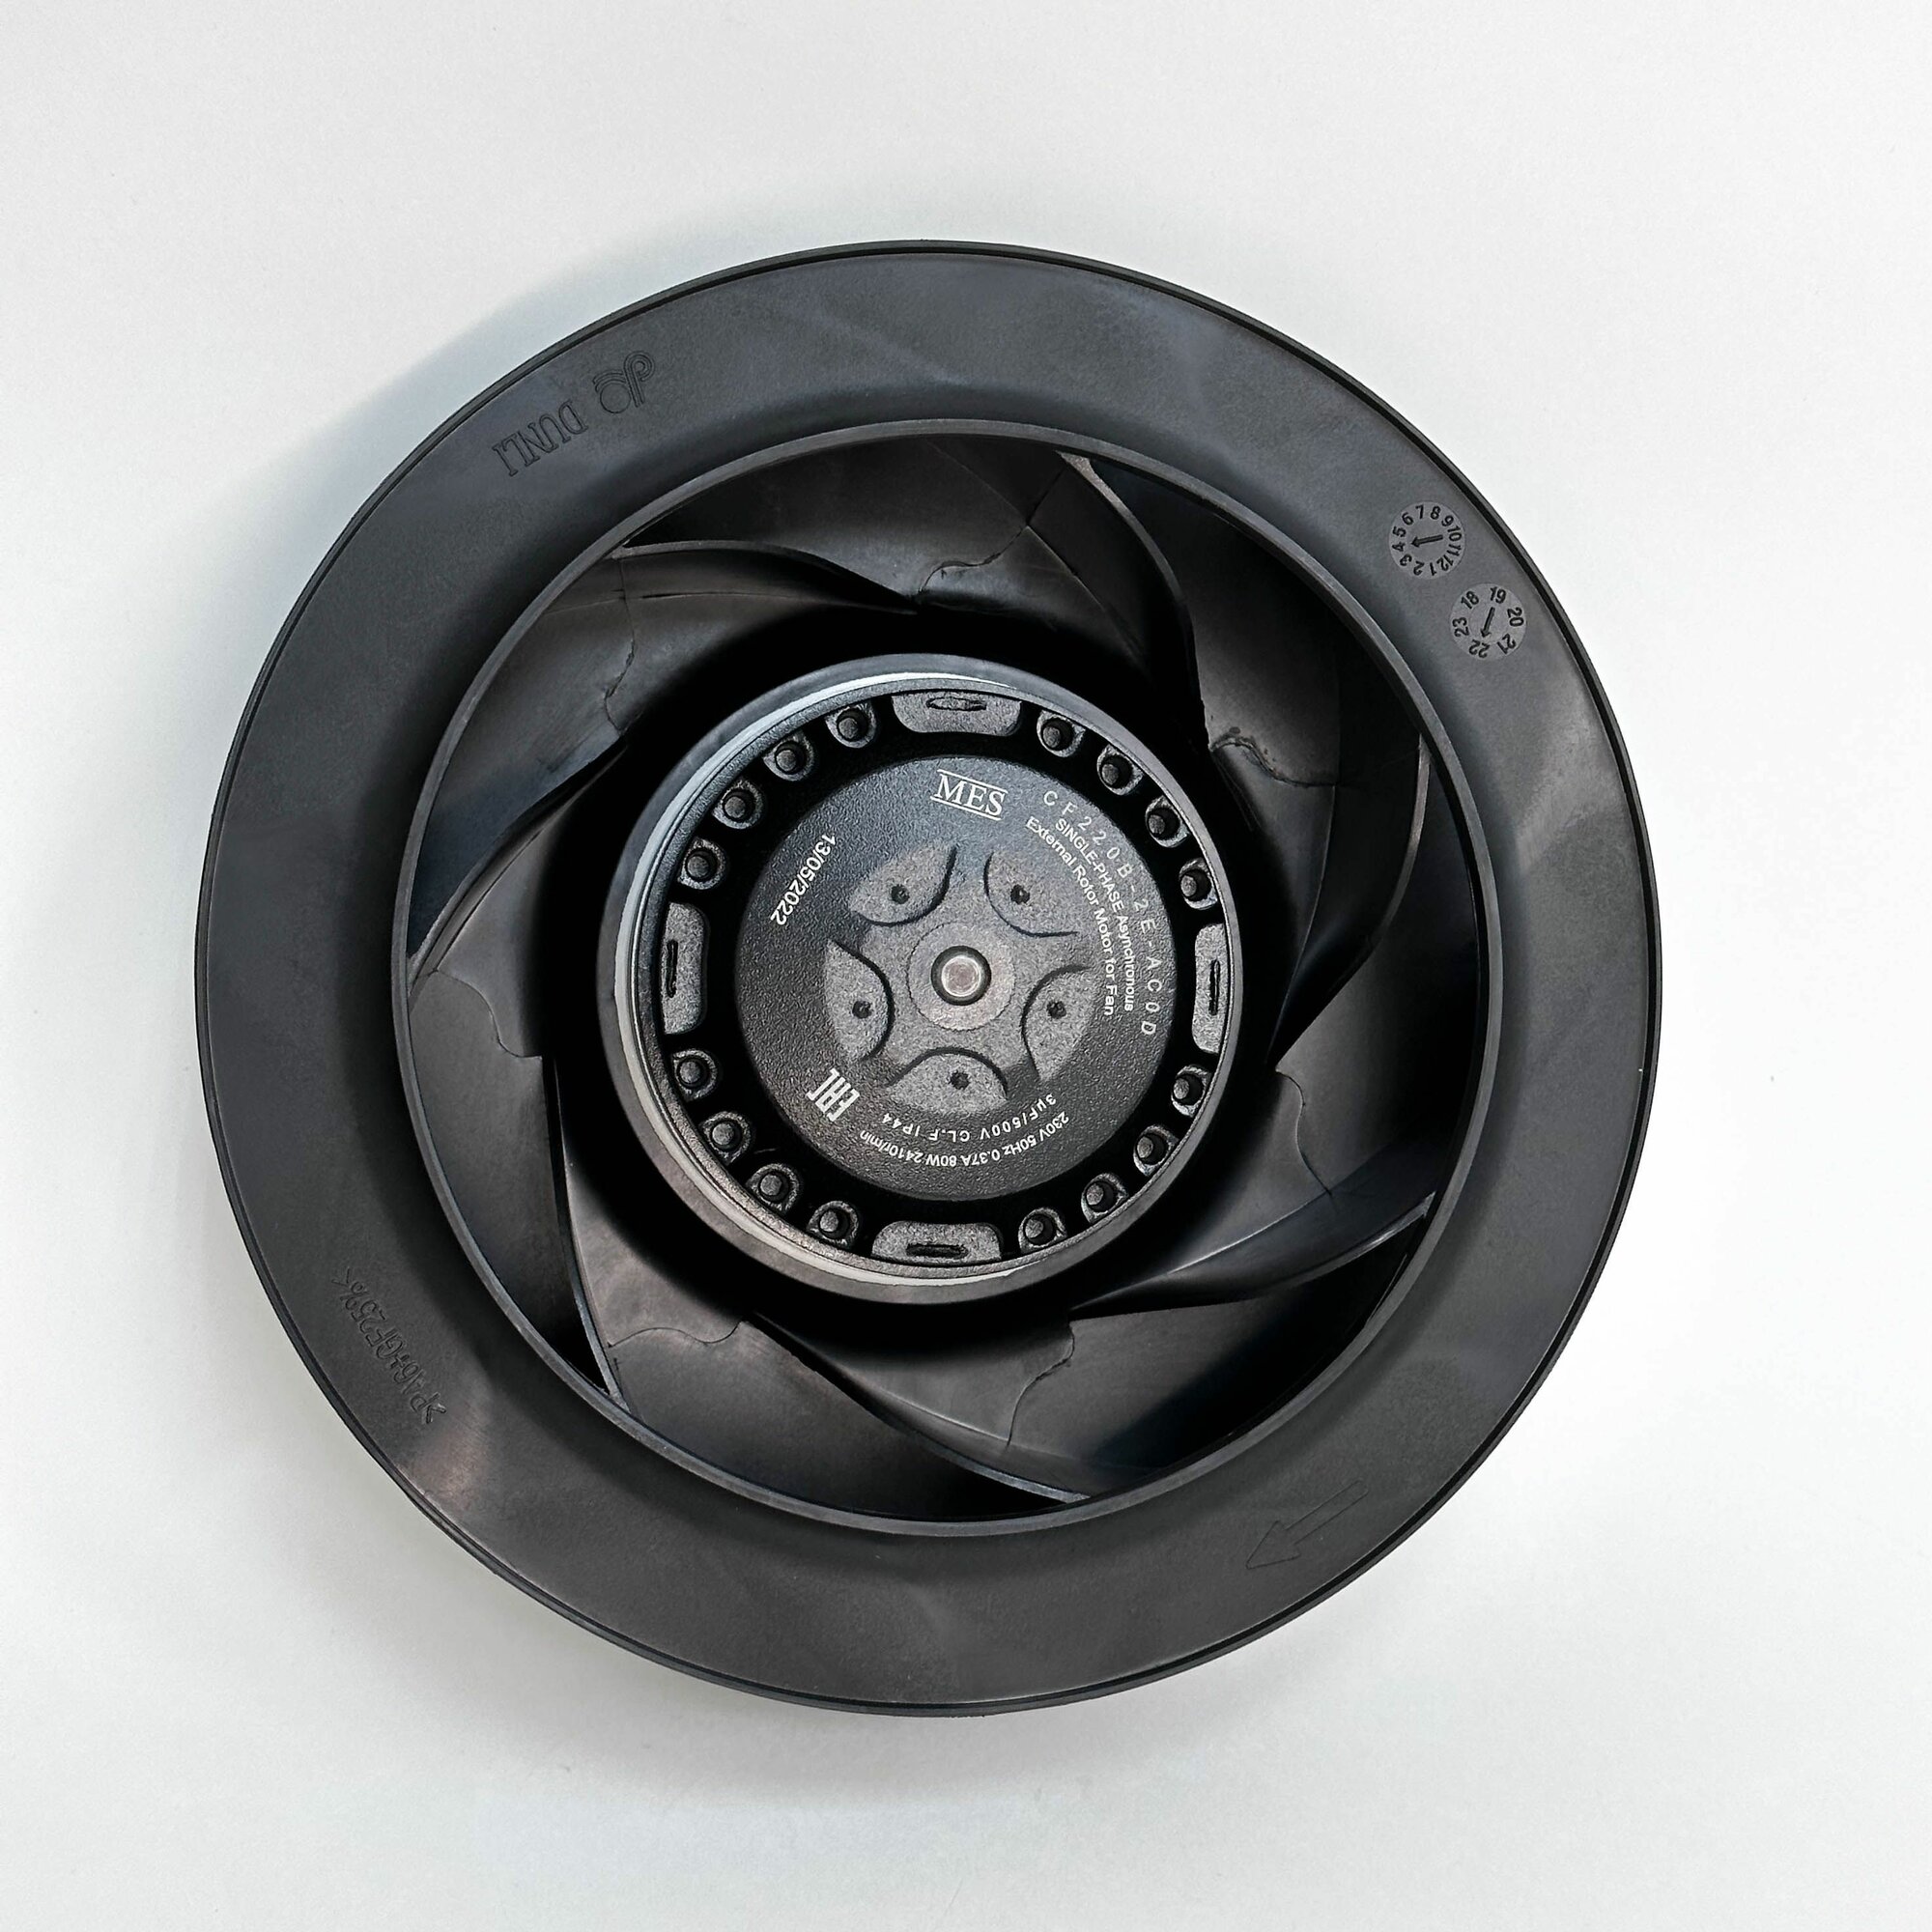 Мотор-колесо MES CF220B-2E-AC0D диаметр 220 мм центробежное, для круглых канальных вентиляторов d 160 мм, 230В, 910 м3/час, 440 Па, 80 Вт, 0.37 А, IP 44